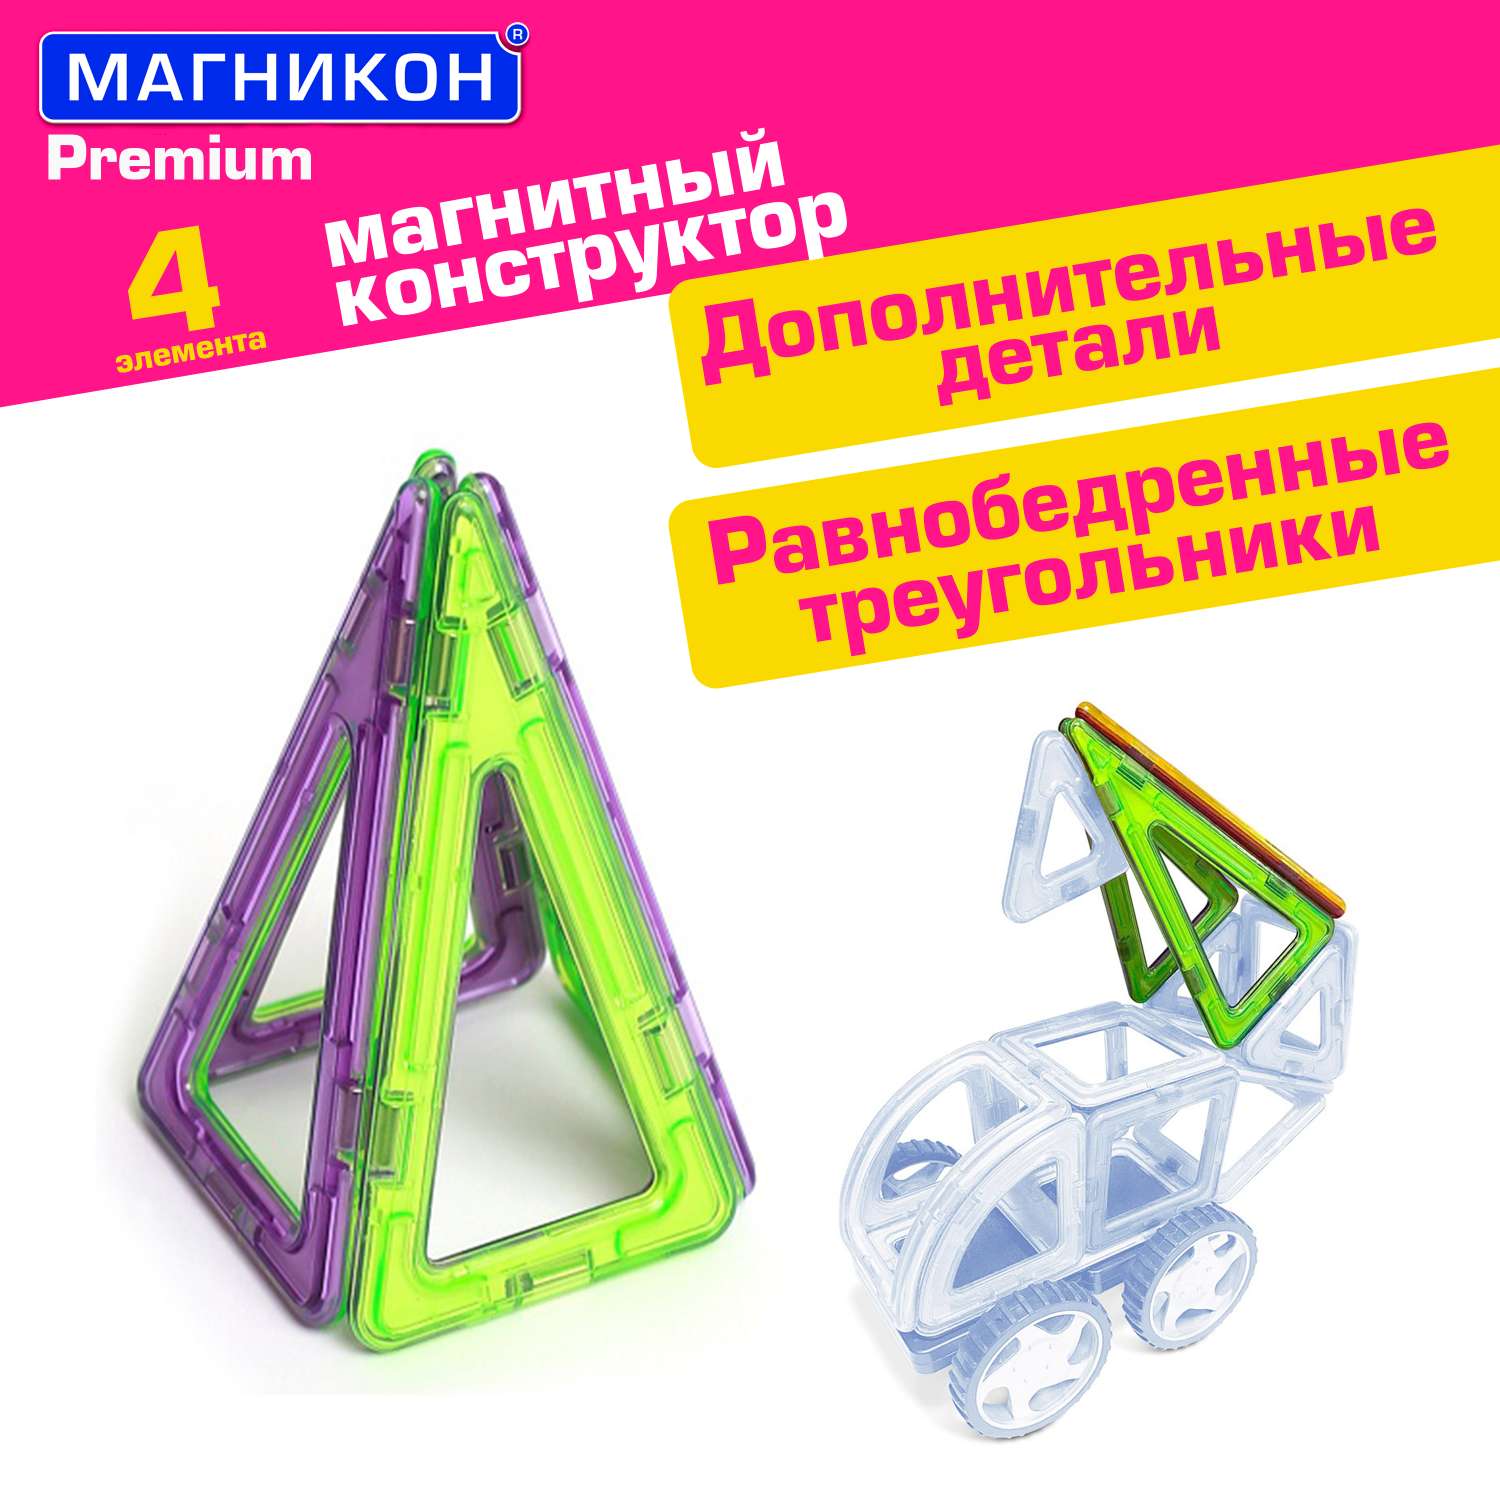 Магнитный конструктор МАГНИКОН Равнобедренный треугольник 4 детали МК-4-РТ - фото 1